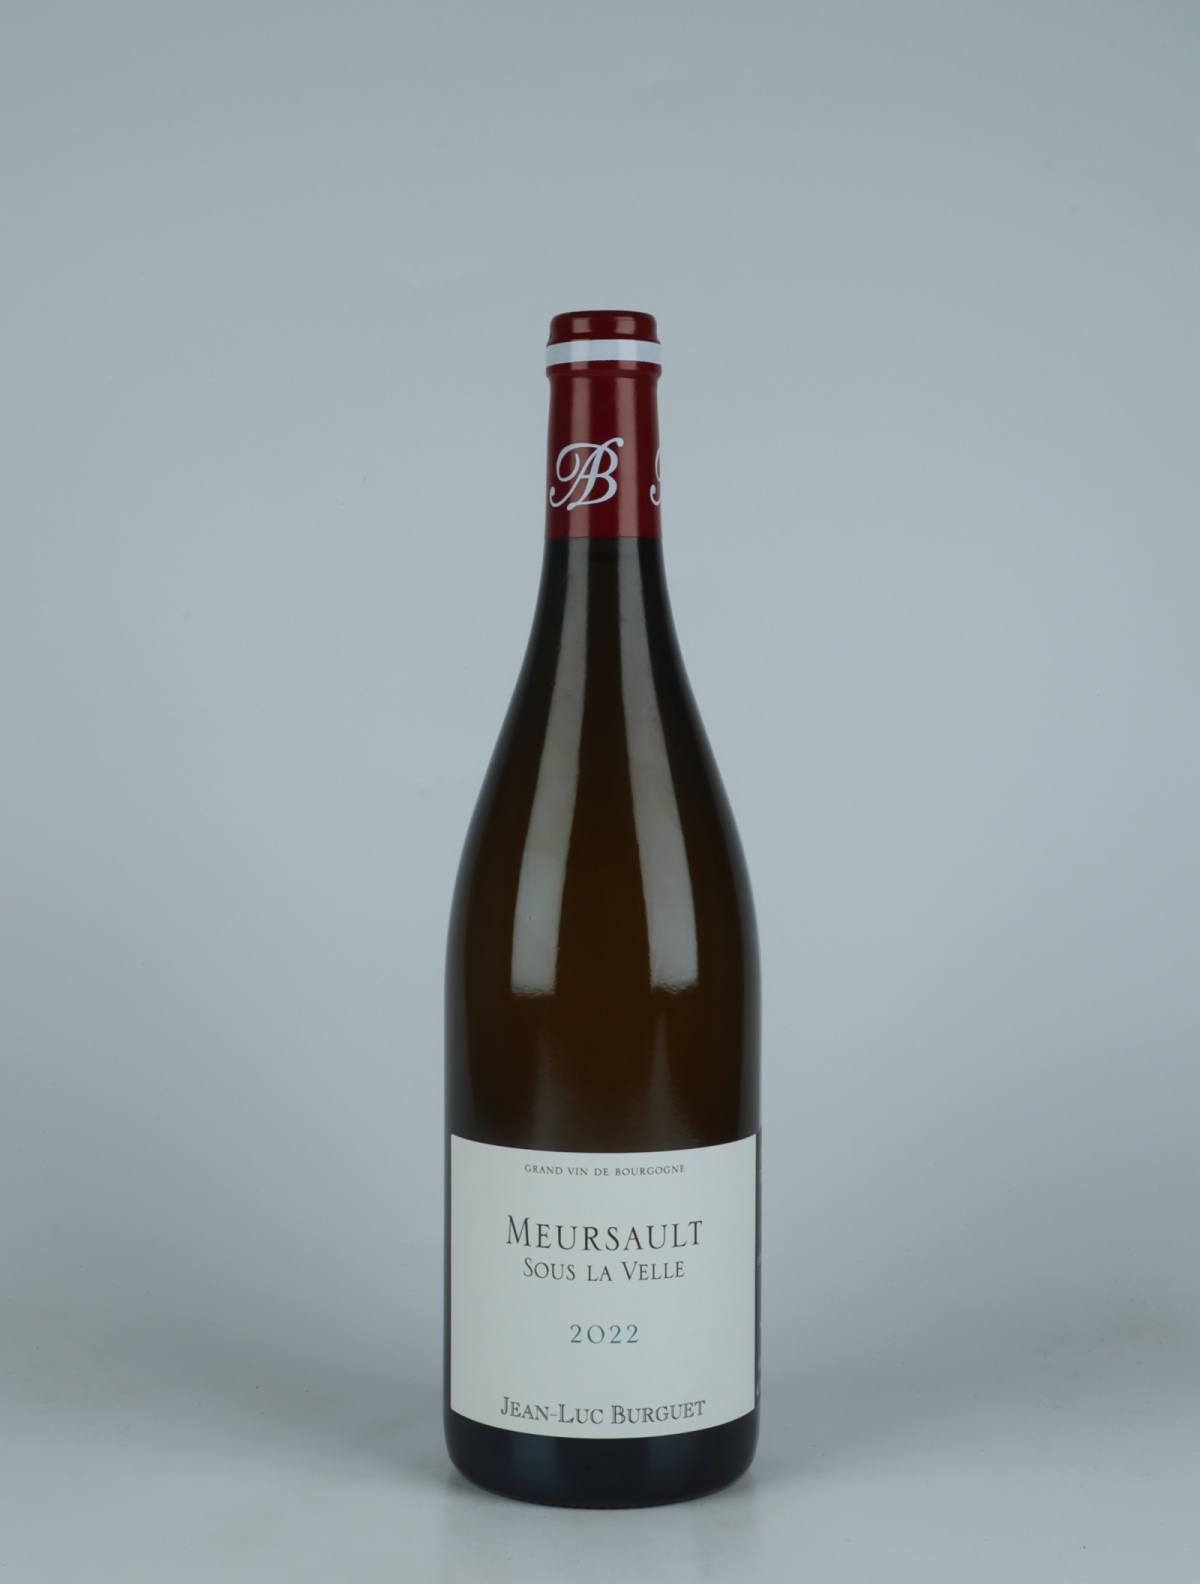 A bottle 2022 Meursault - Sous la Velle White wine from Jean-Luc & Eric Burguet, Burgundy in France